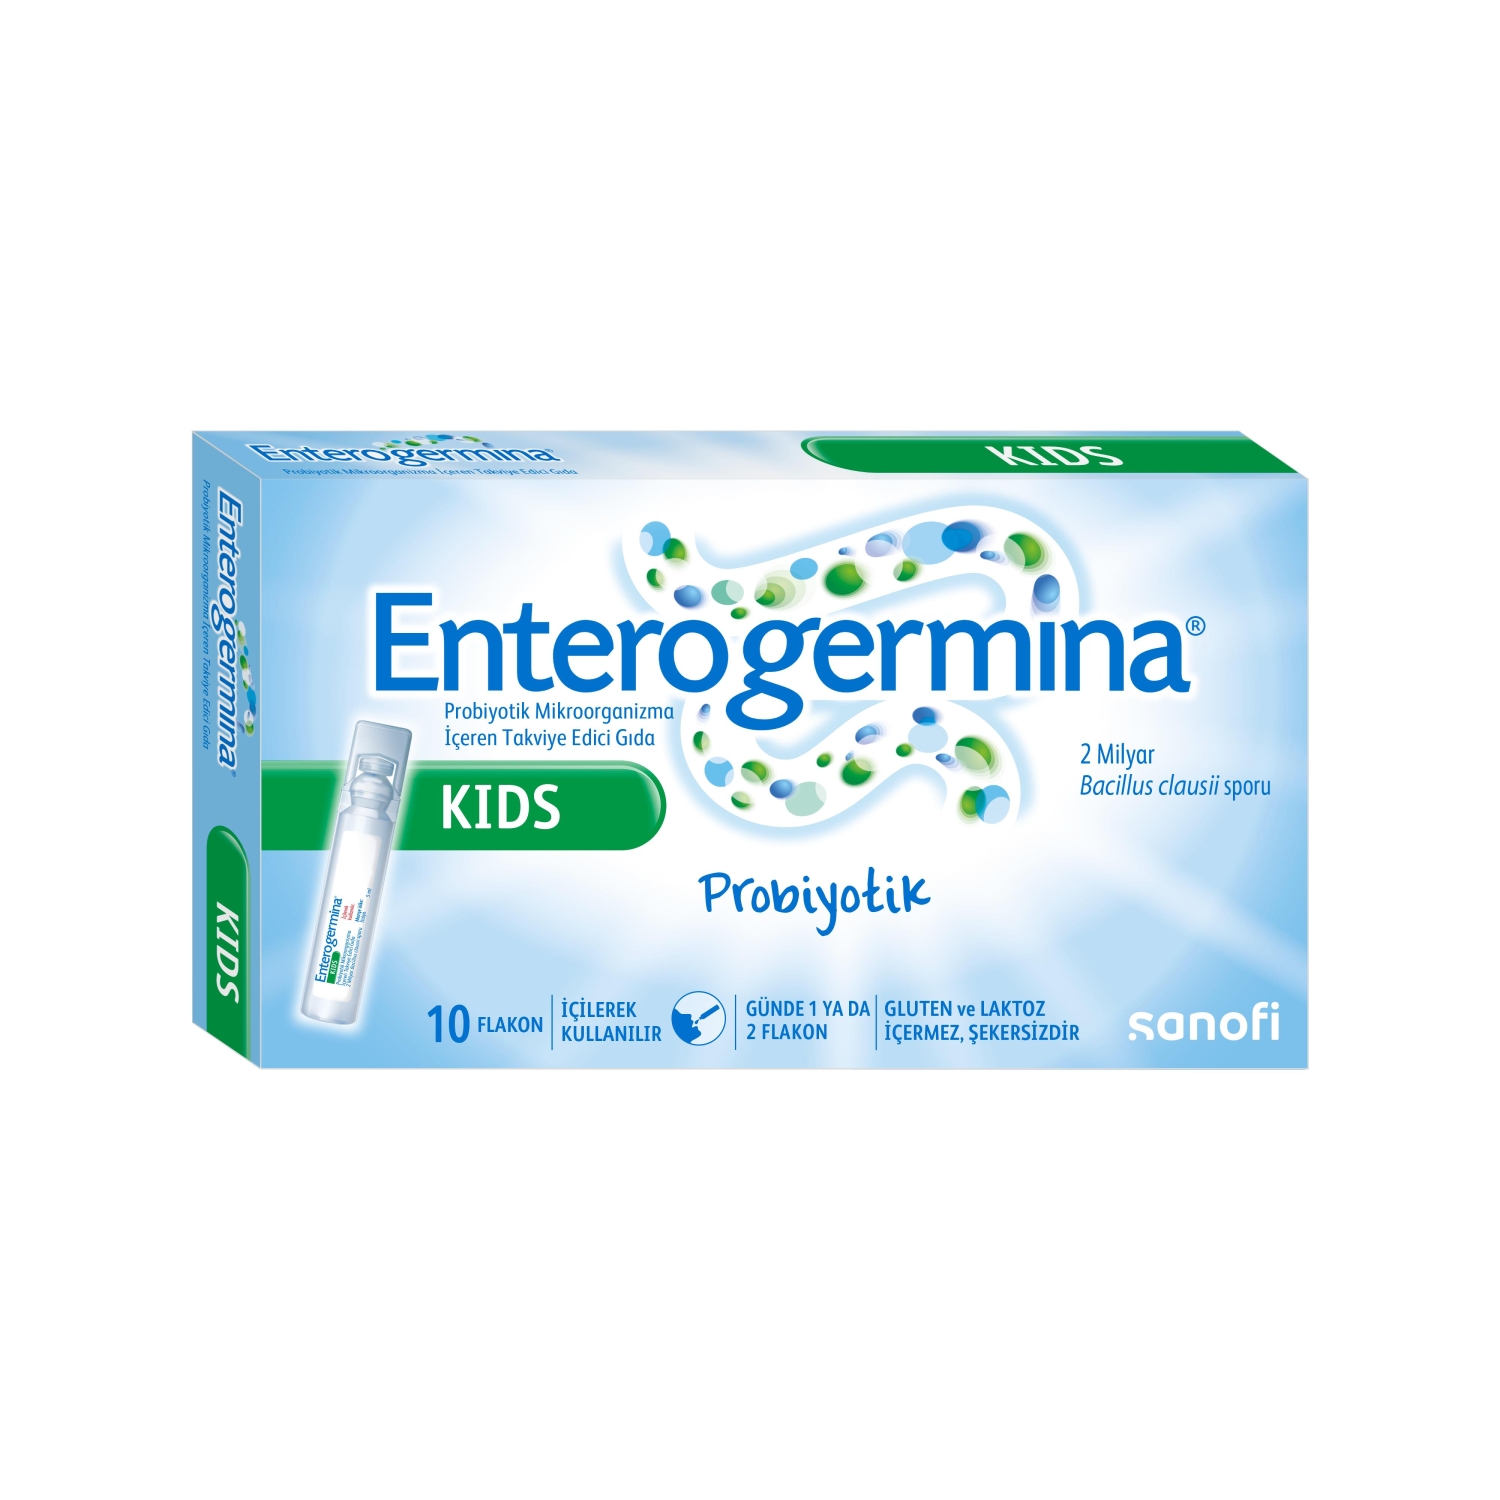 Enterogermina Kids Probiotic 10 Flakon - 1